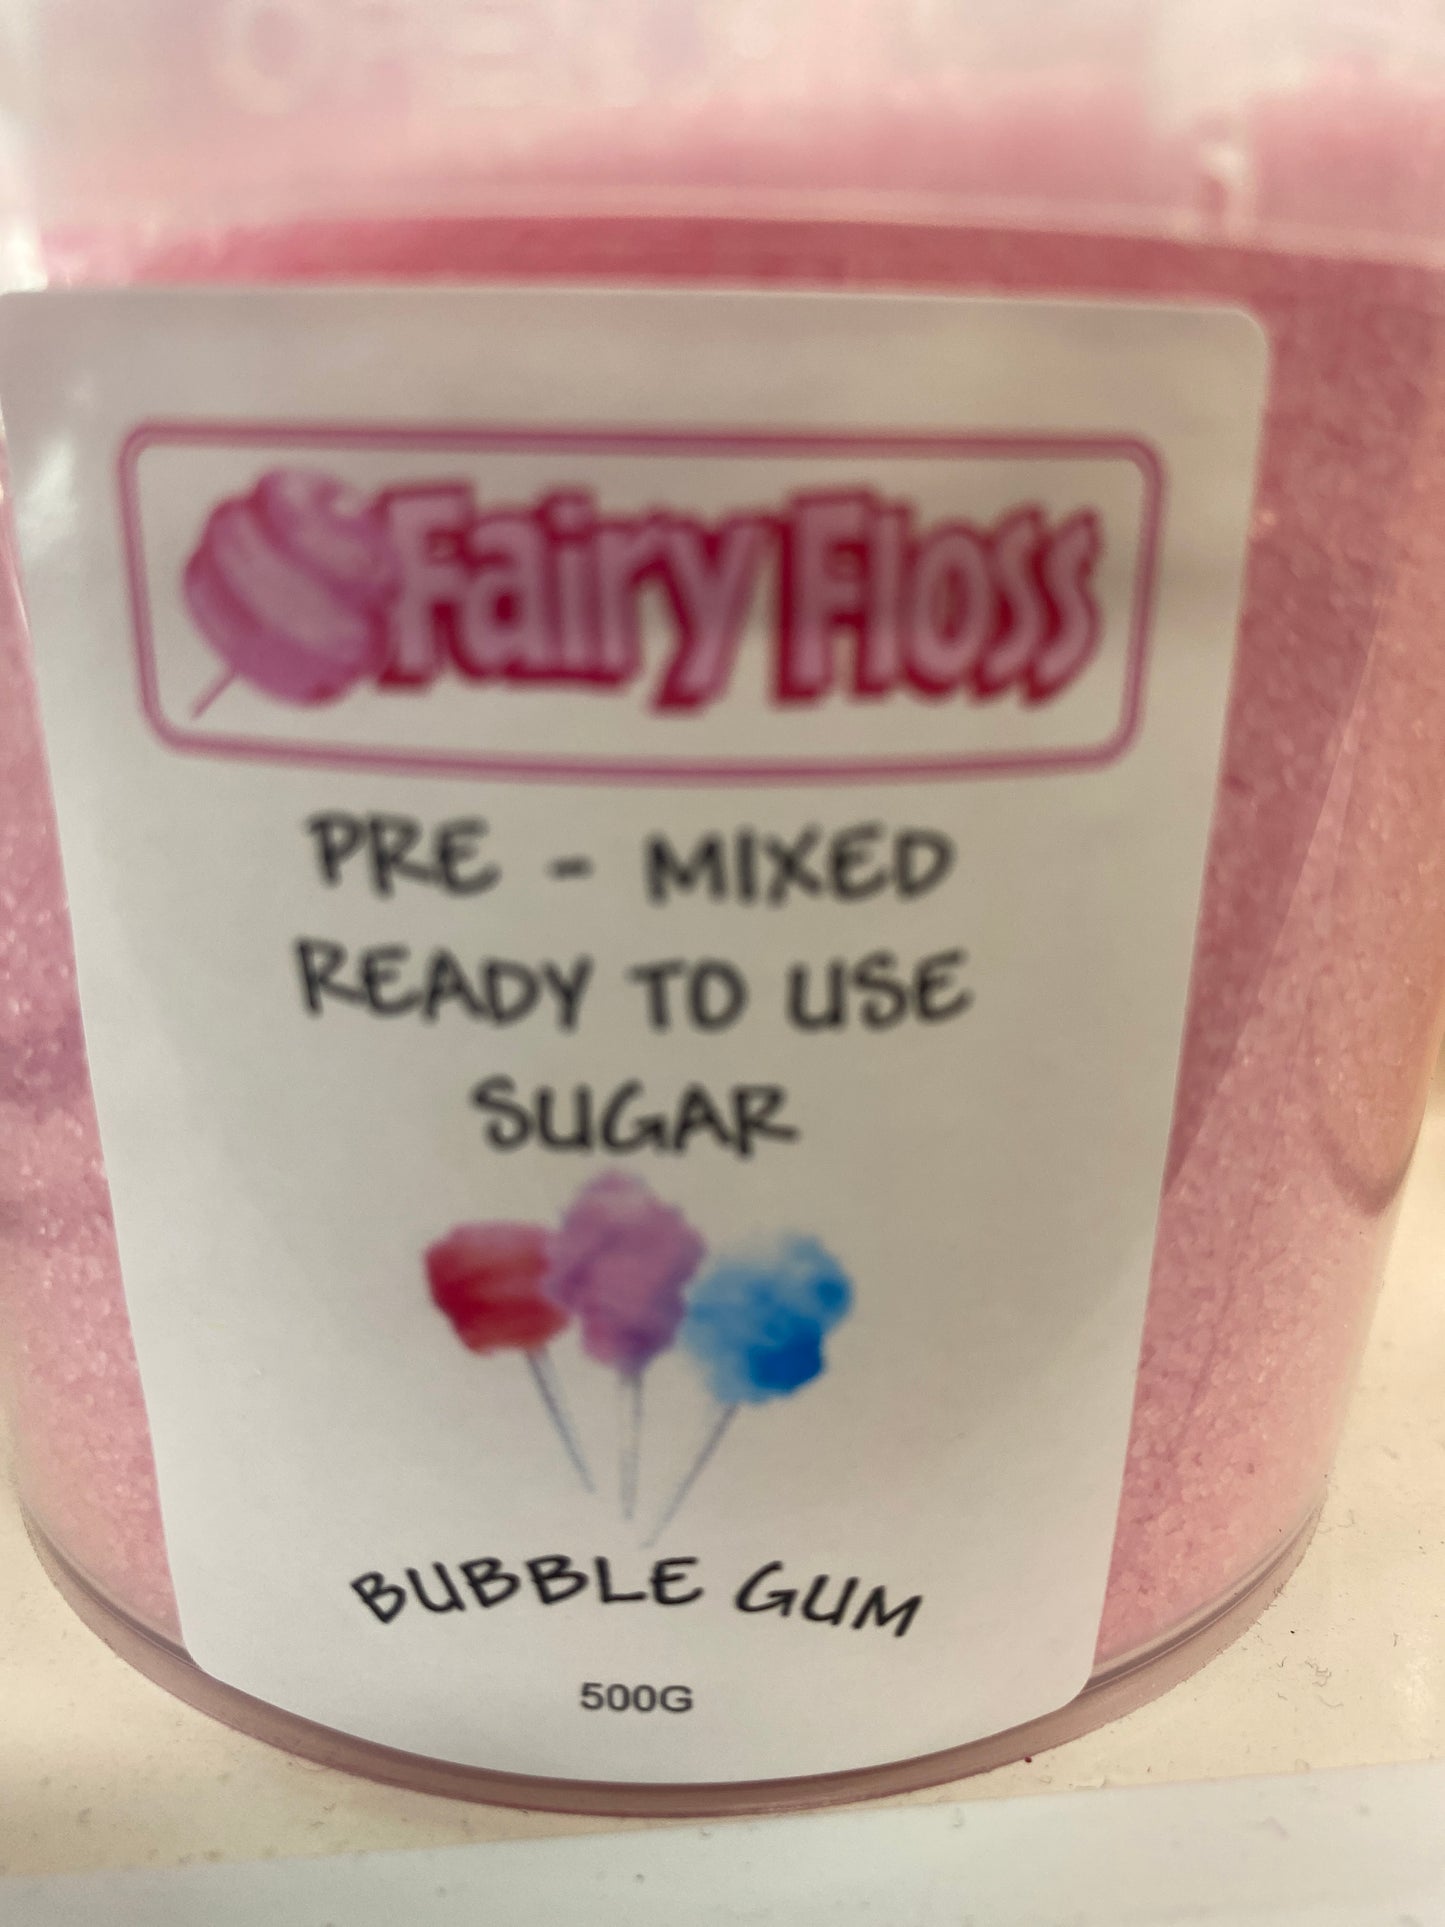 Fairy Floss Sugar Mix 500g